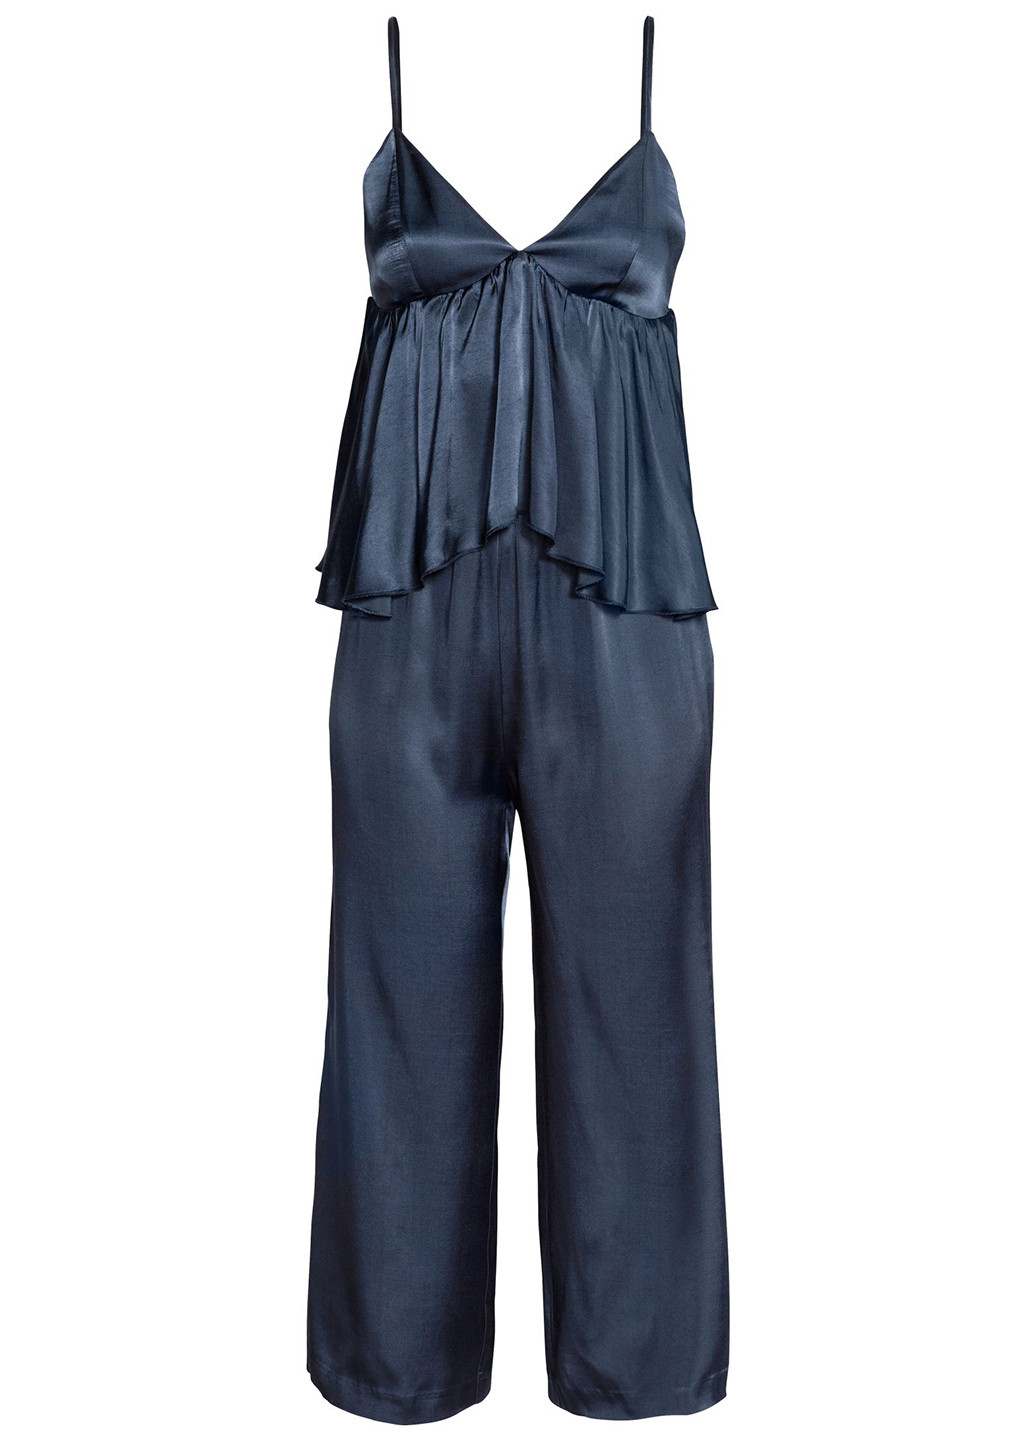 Комбинезон H&M комбинезон-брюки однотонный тёмно-синий коктейльный вискоза, атлас